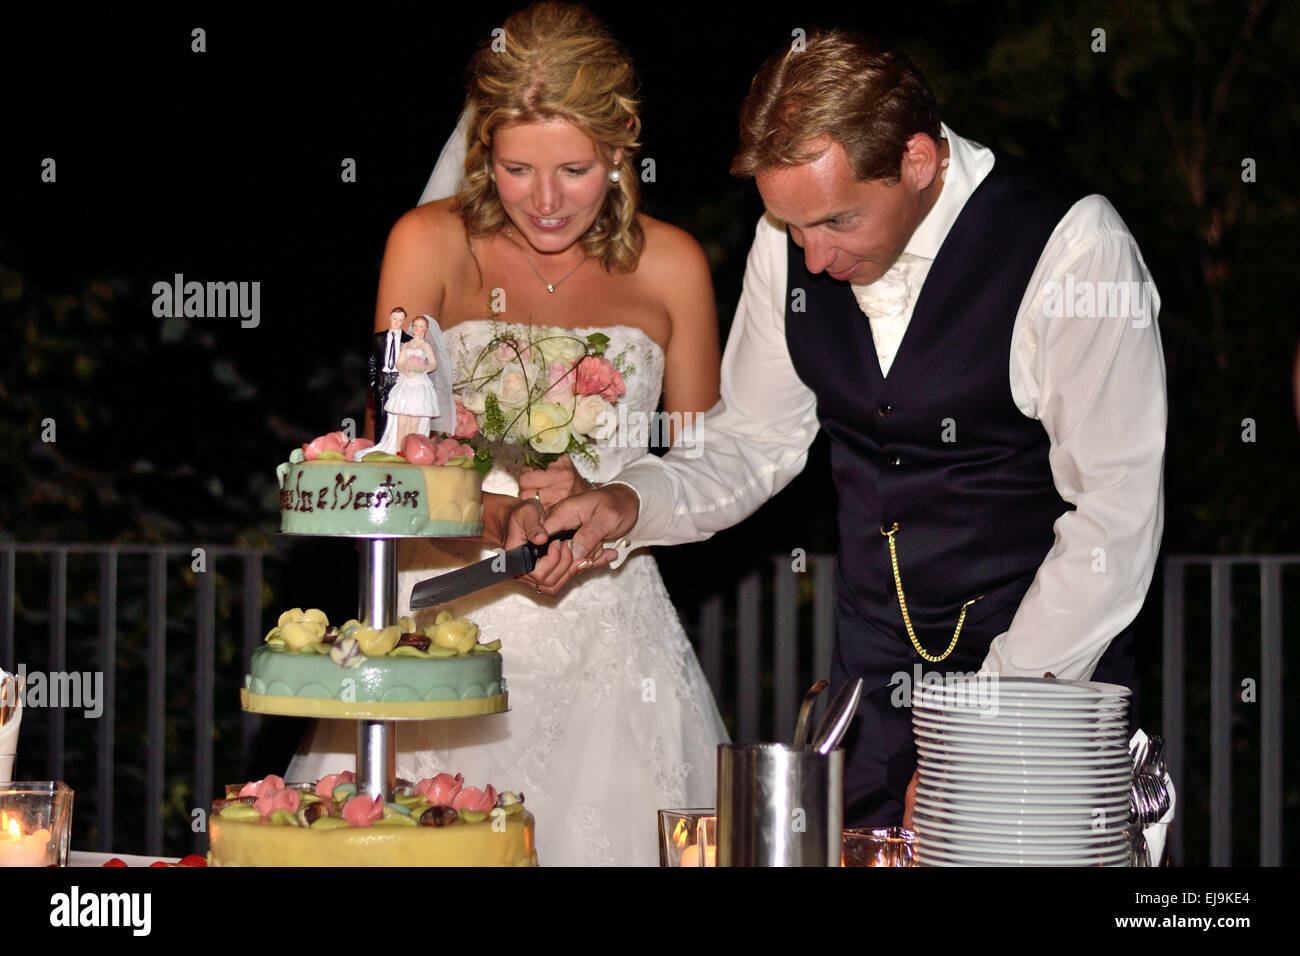 Wedding couple cutting the wedding cake Stock Photo